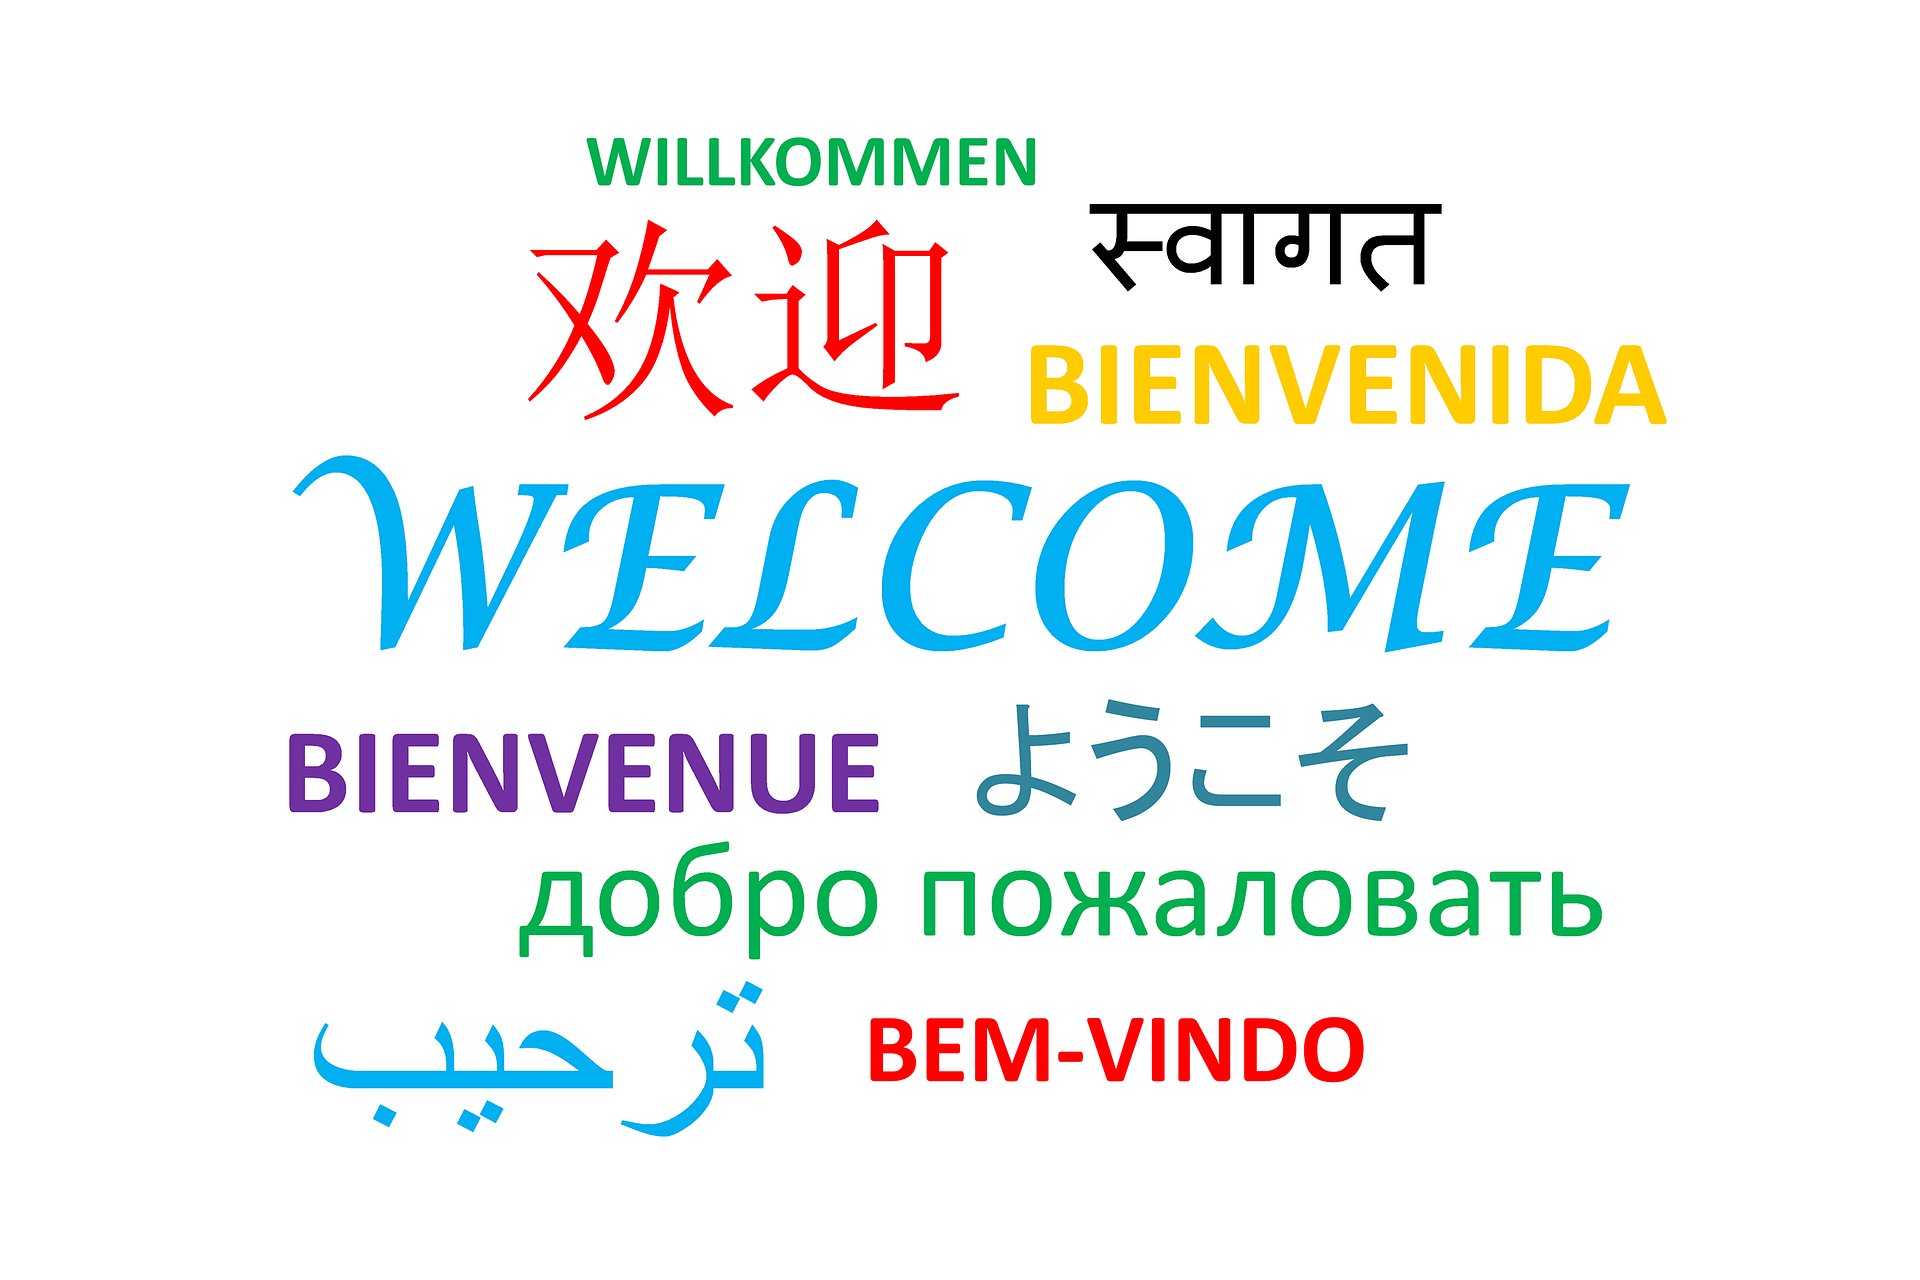 Willkommen auf mehreren Sprachen